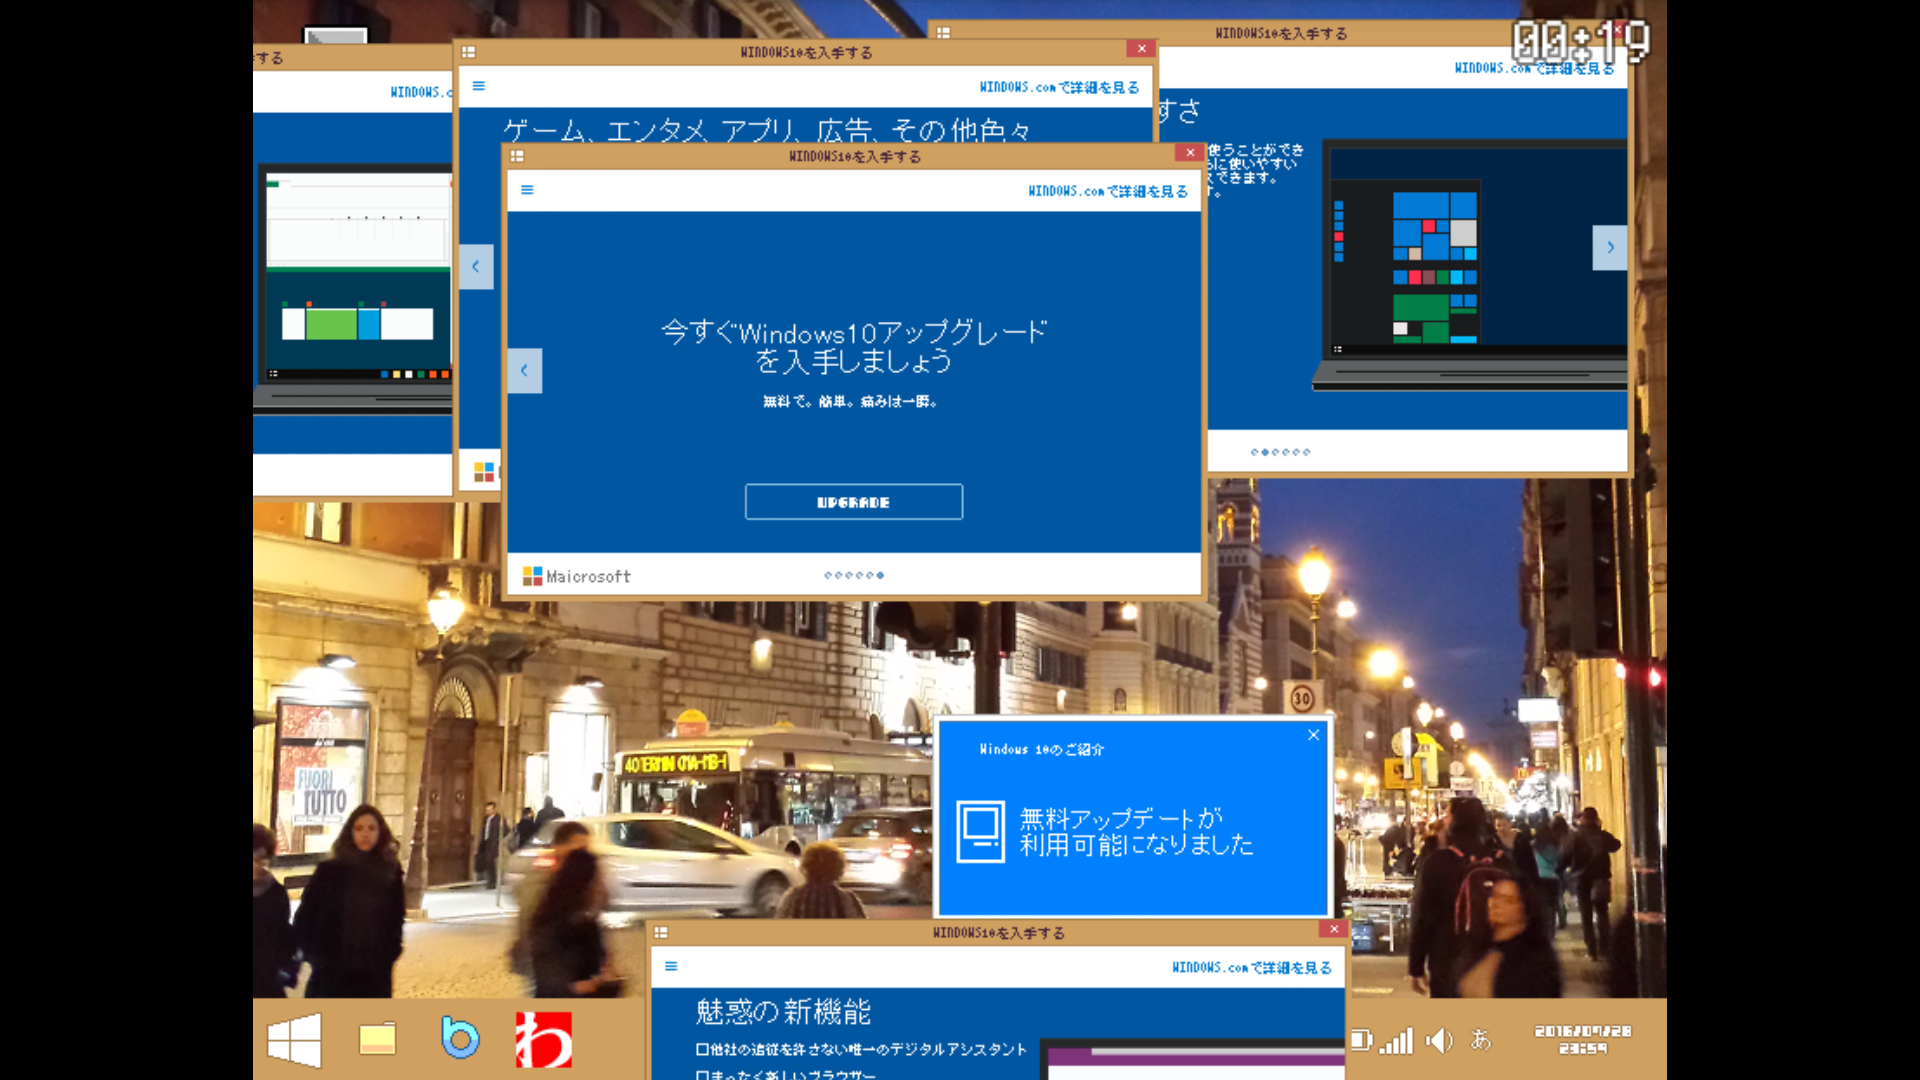 Screenshot 1 of Huwag hayaang mag-upgrade ang Windows sa 10 1.0.1